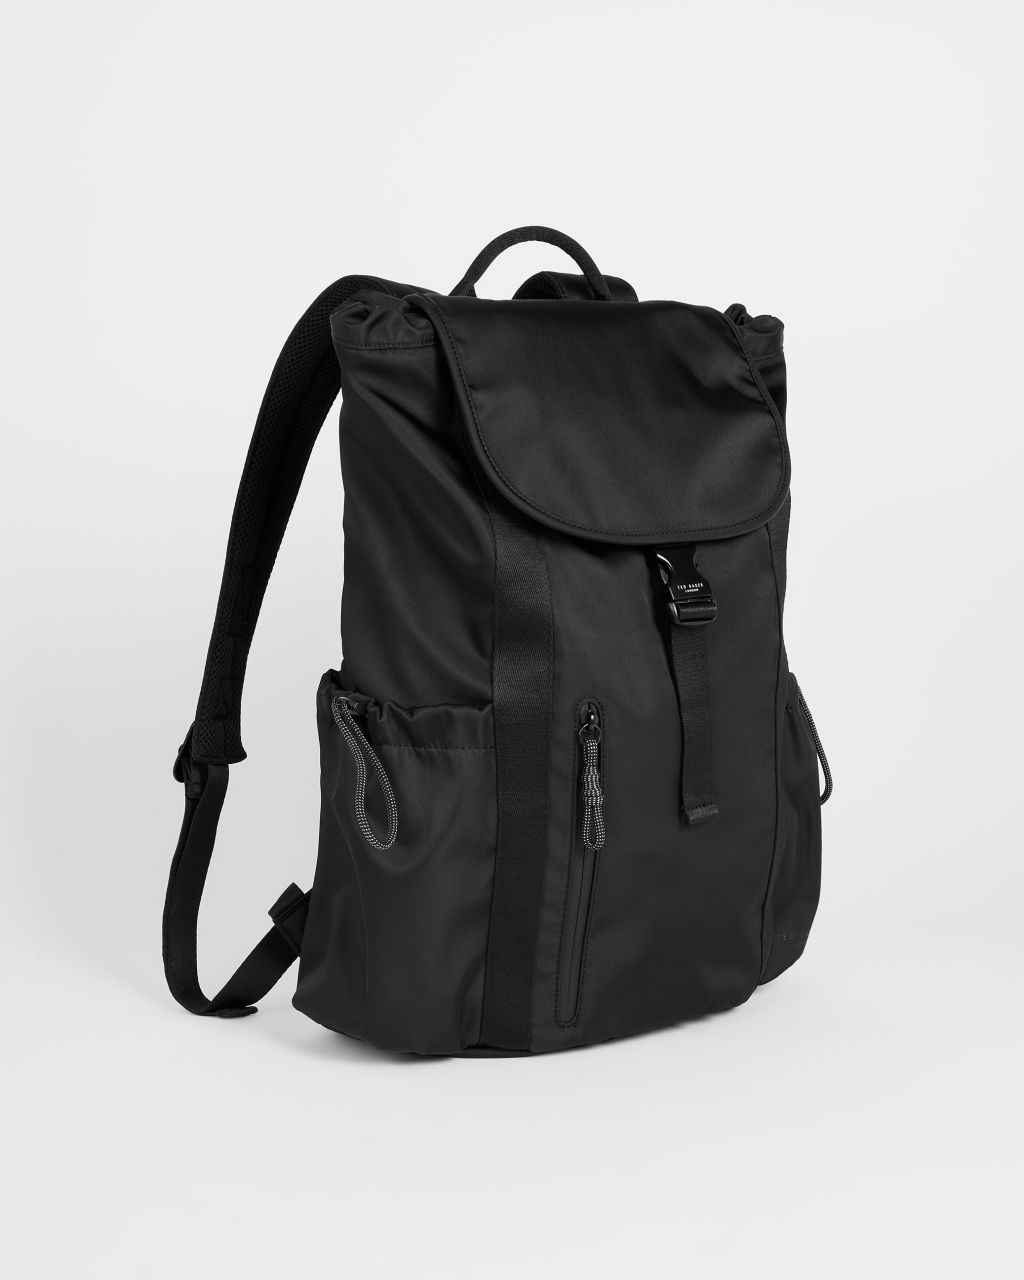 Men's Satin Nylon Backpack in Black, Snowd product